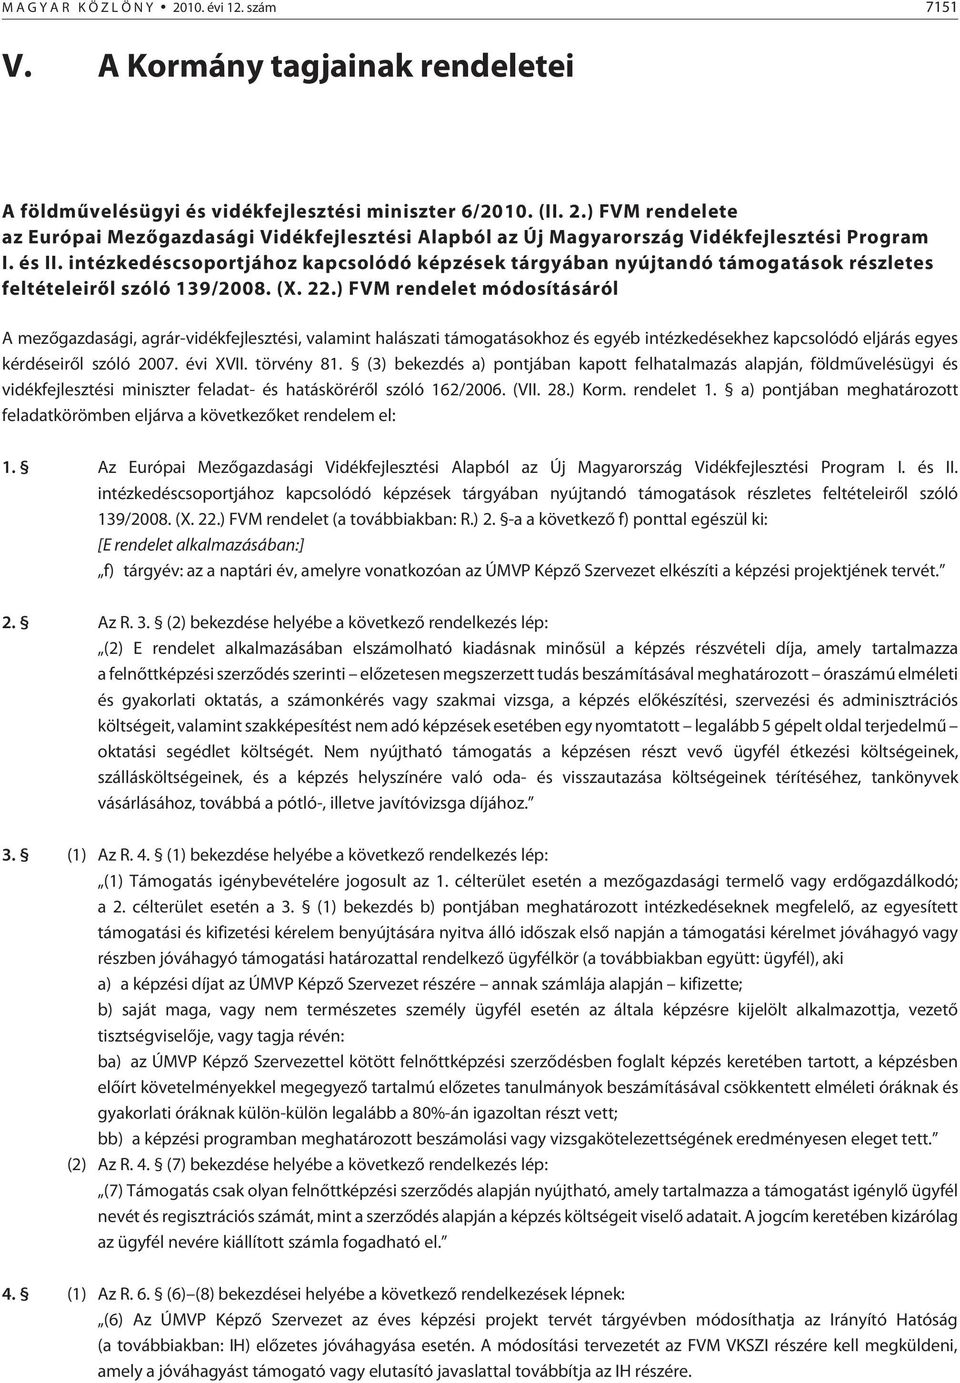 ) FVM rendelet módosításáról A mezõgazdasági, agrár-vidékfejlesztési, valamint halászati támogatásokhoz és egyéb intézkedésekhez kapcsolódó eljárás egyes kérdéseirõl szóló 2007. évi XVII. törvény 81.